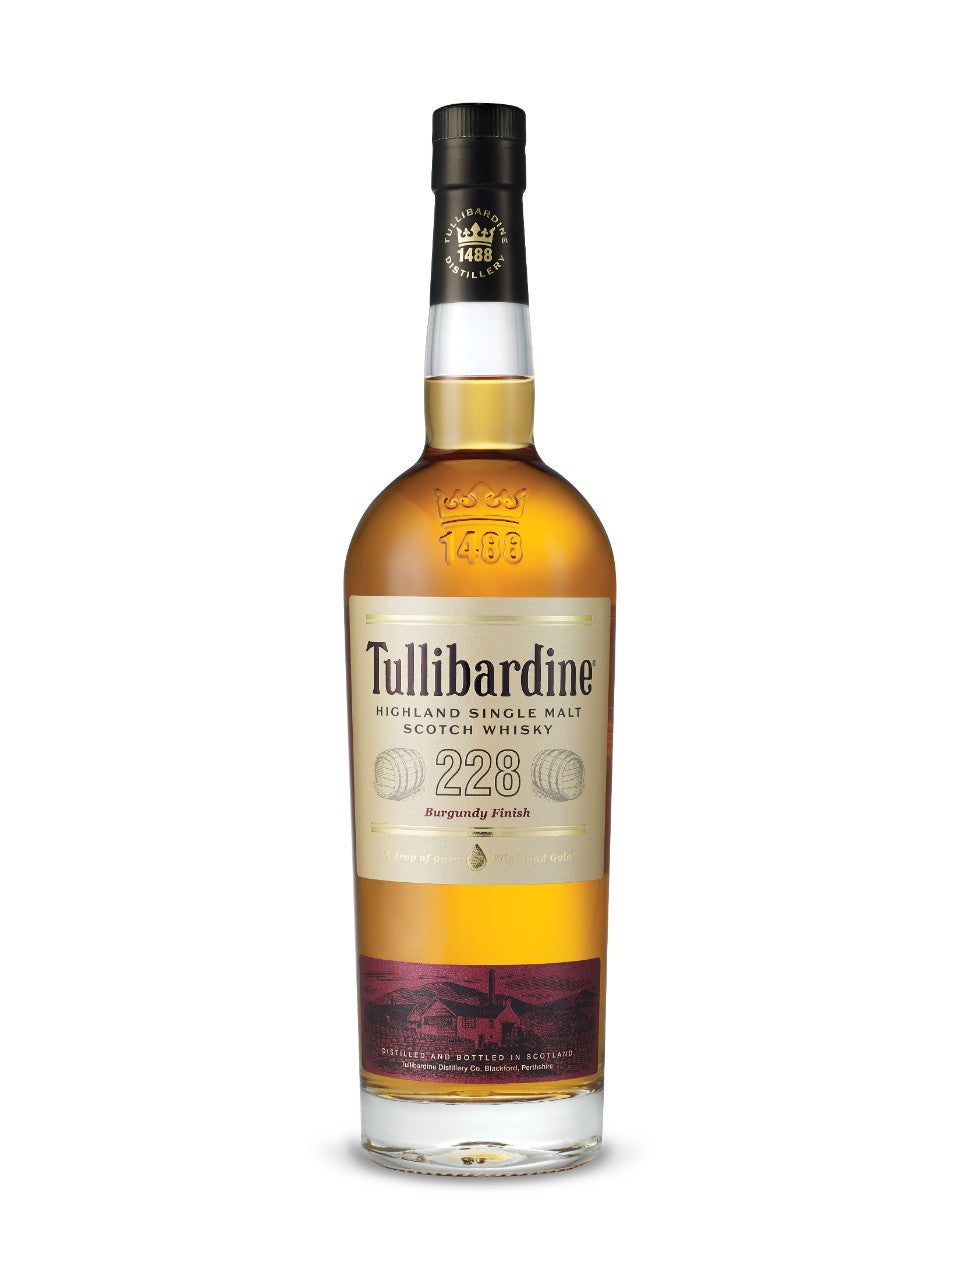 Tullibardine 228 Burgundy Finish Highland Single Malt Scotch Whisky 750 mL bottle